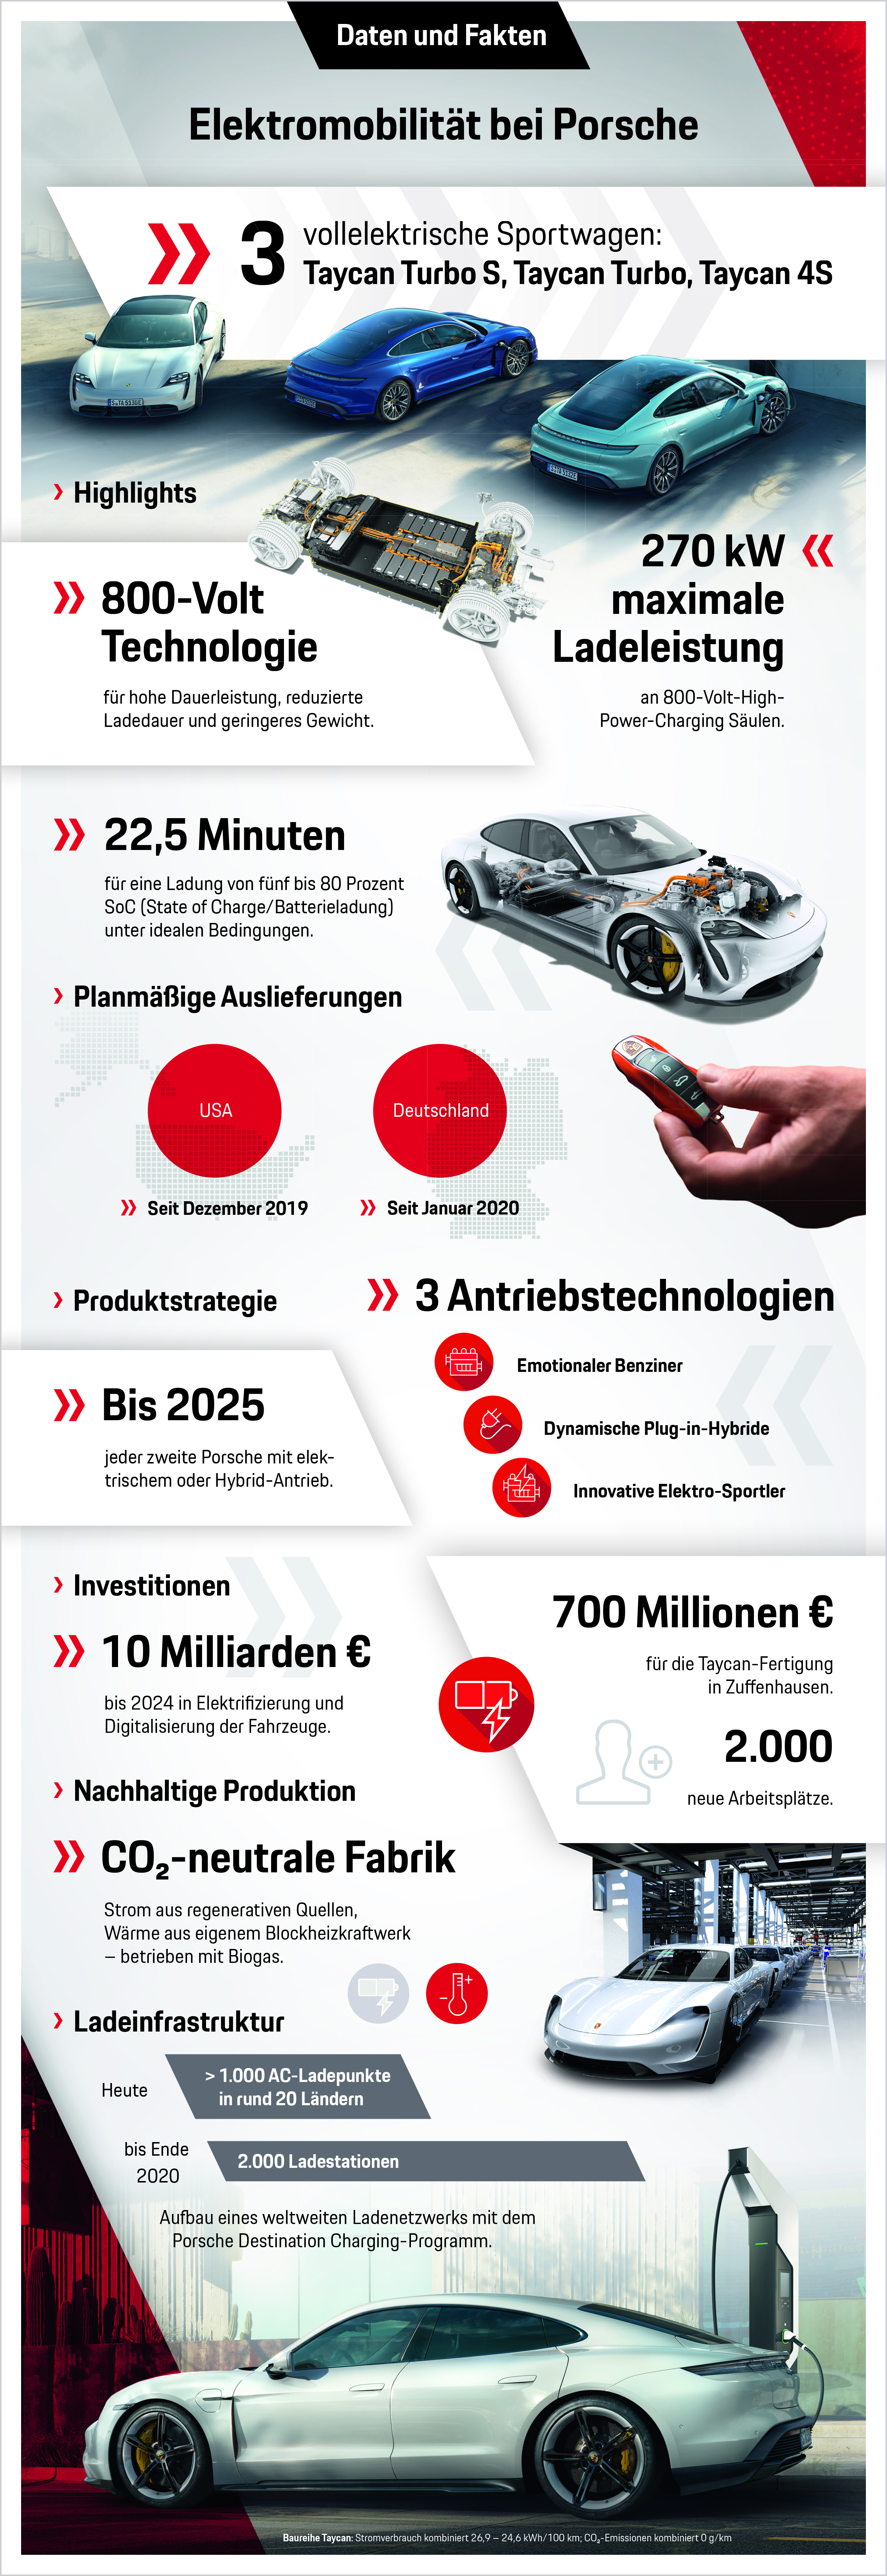 Elektromobilität bei Porsche, Infografik, 2020, Porsche AG